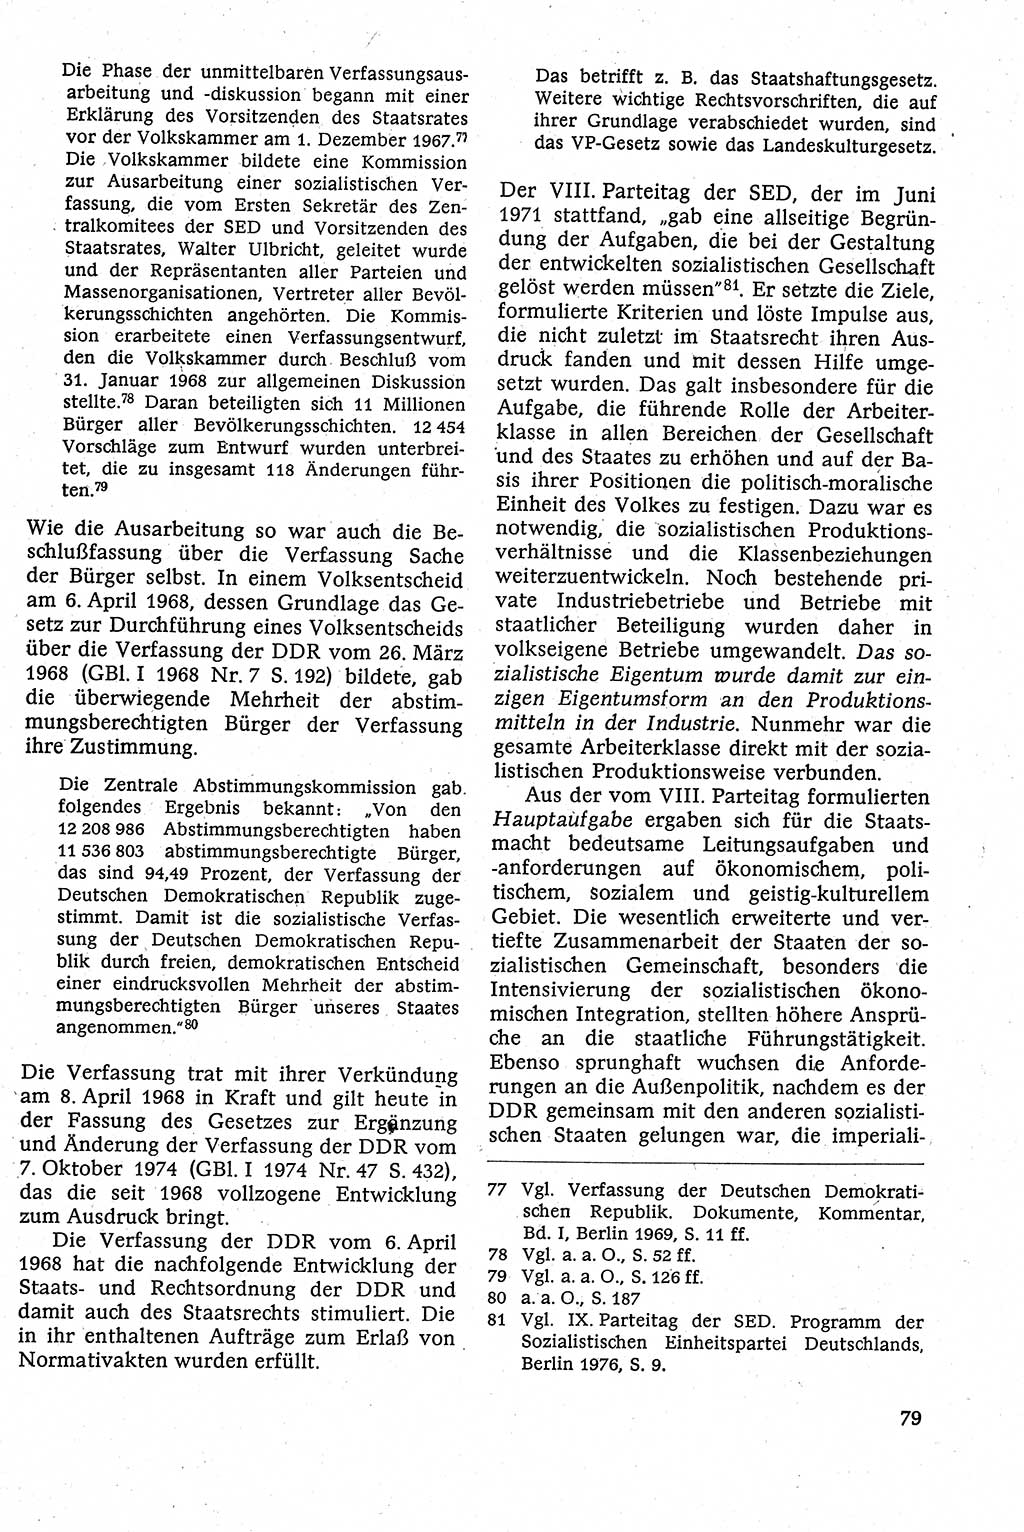 Staatsrecht der DDR [Deutsche Demokratische Republik (DDR)], Lehrbuch 1984, Seite 79 (St.-R. DDR Lb. 1984, S. 79)